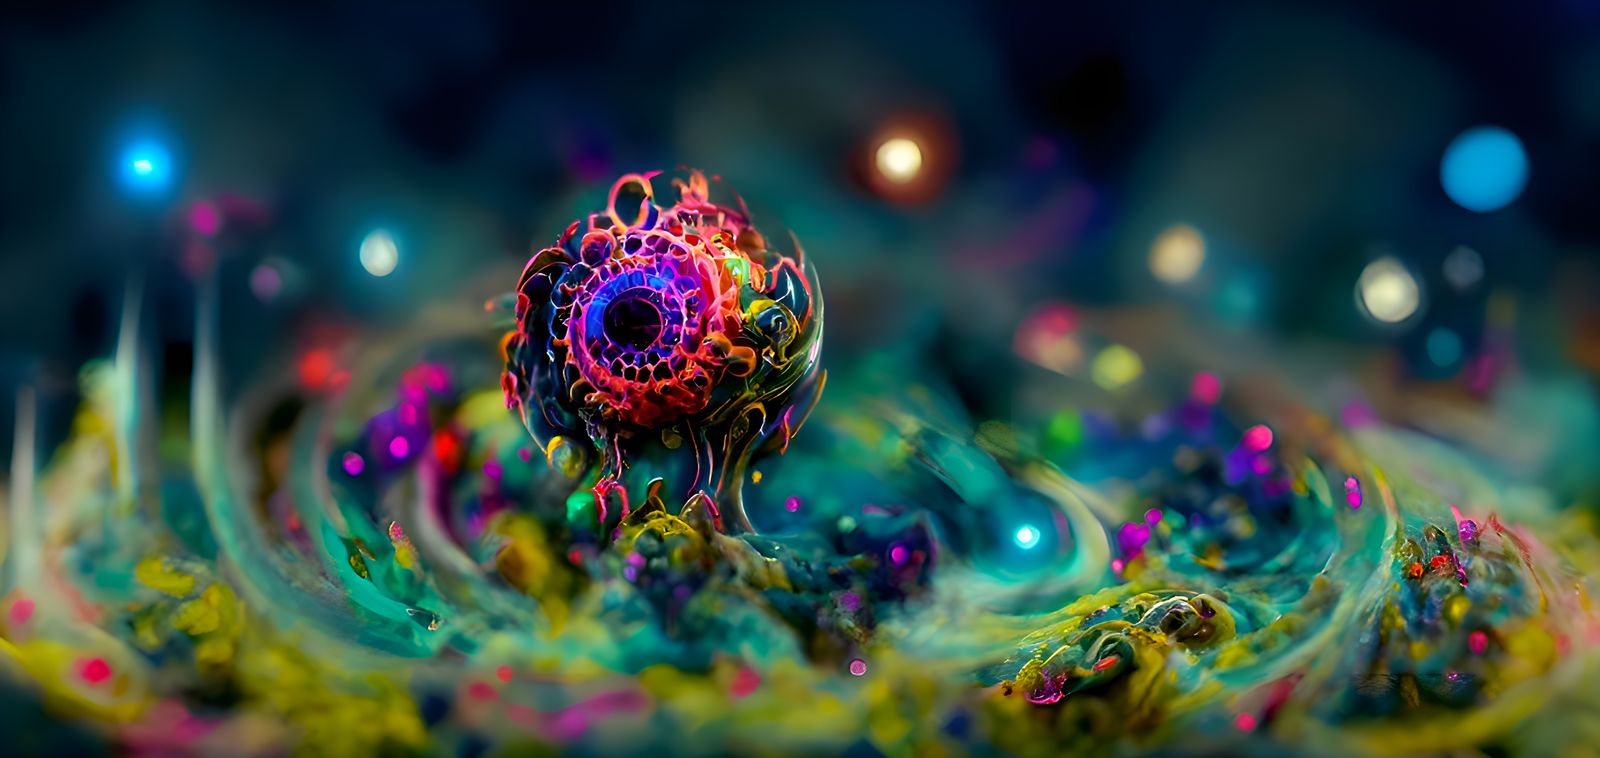 تصویر تولید شده Al یا هوش مصنوعی از گیاه قشنگ و رنگارنگ به شکل مردمک چشم 